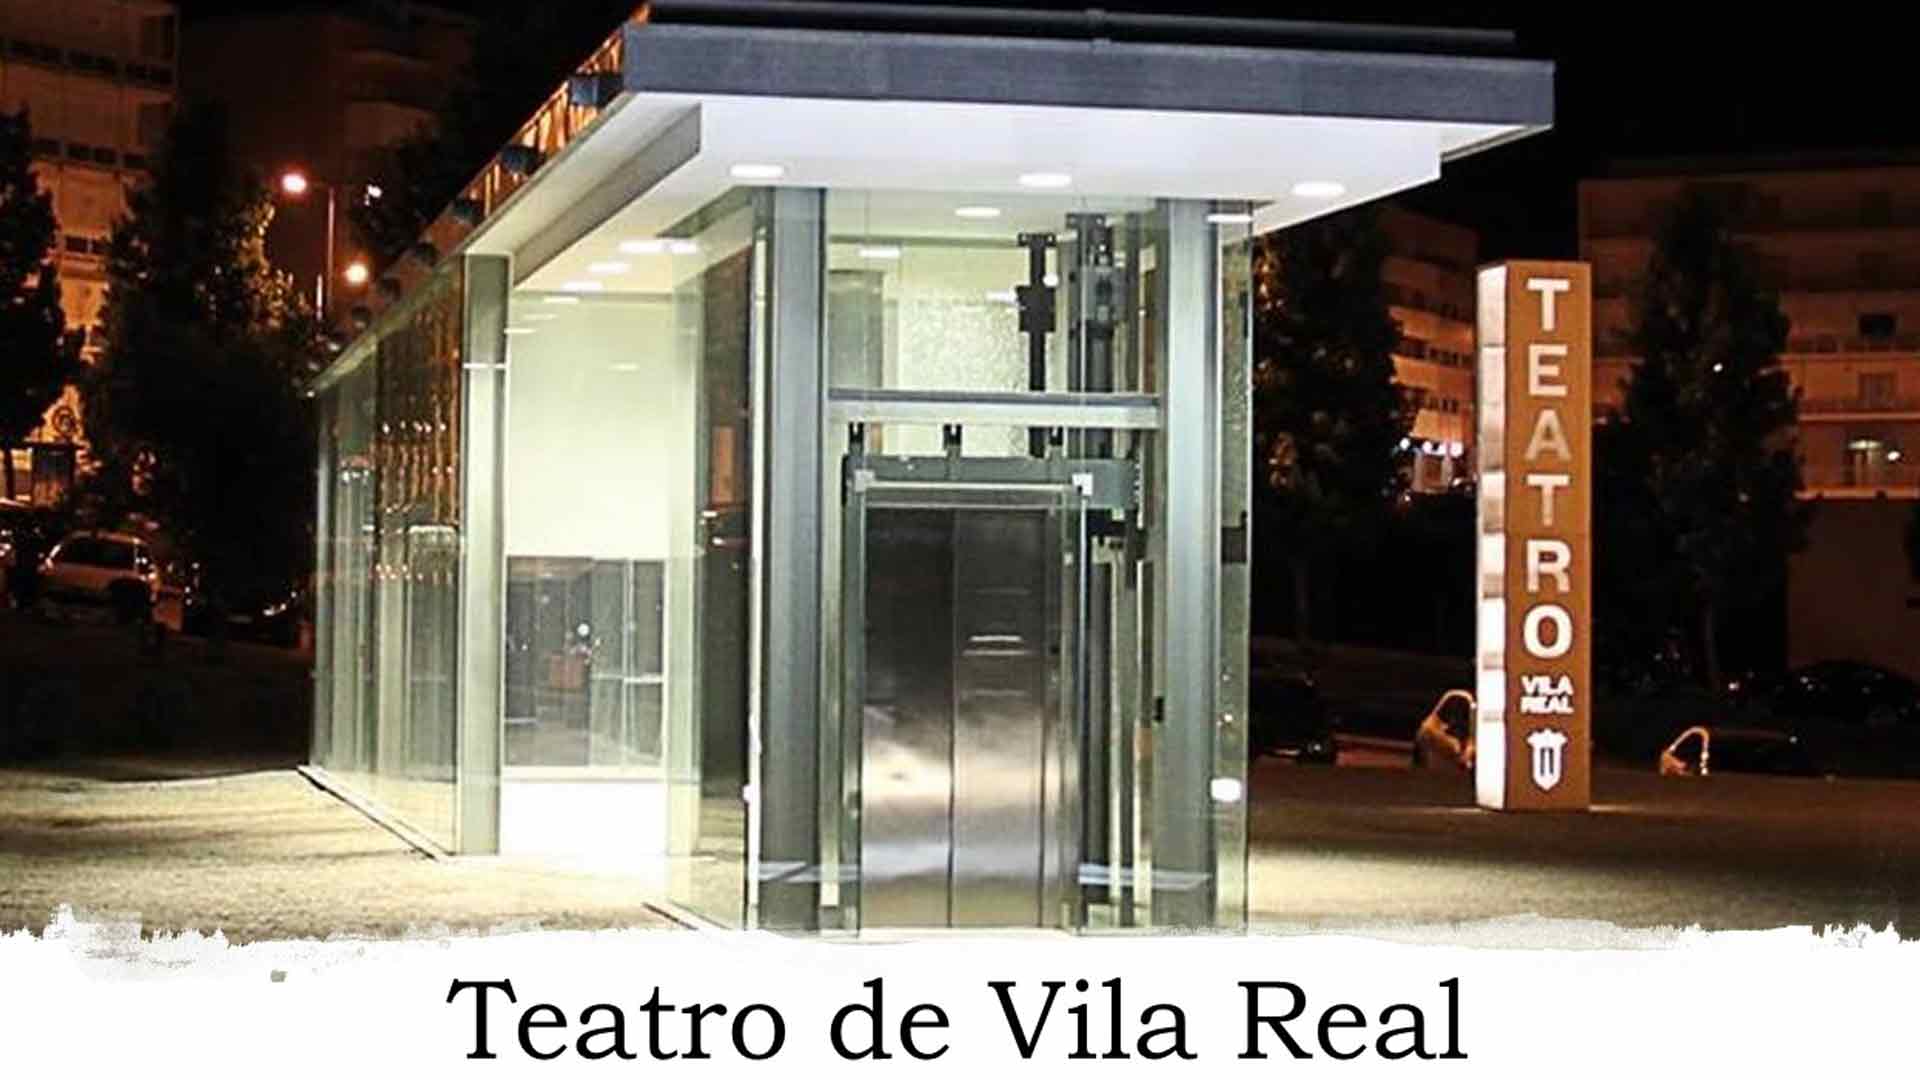 Frente do Teatro de Vila Real